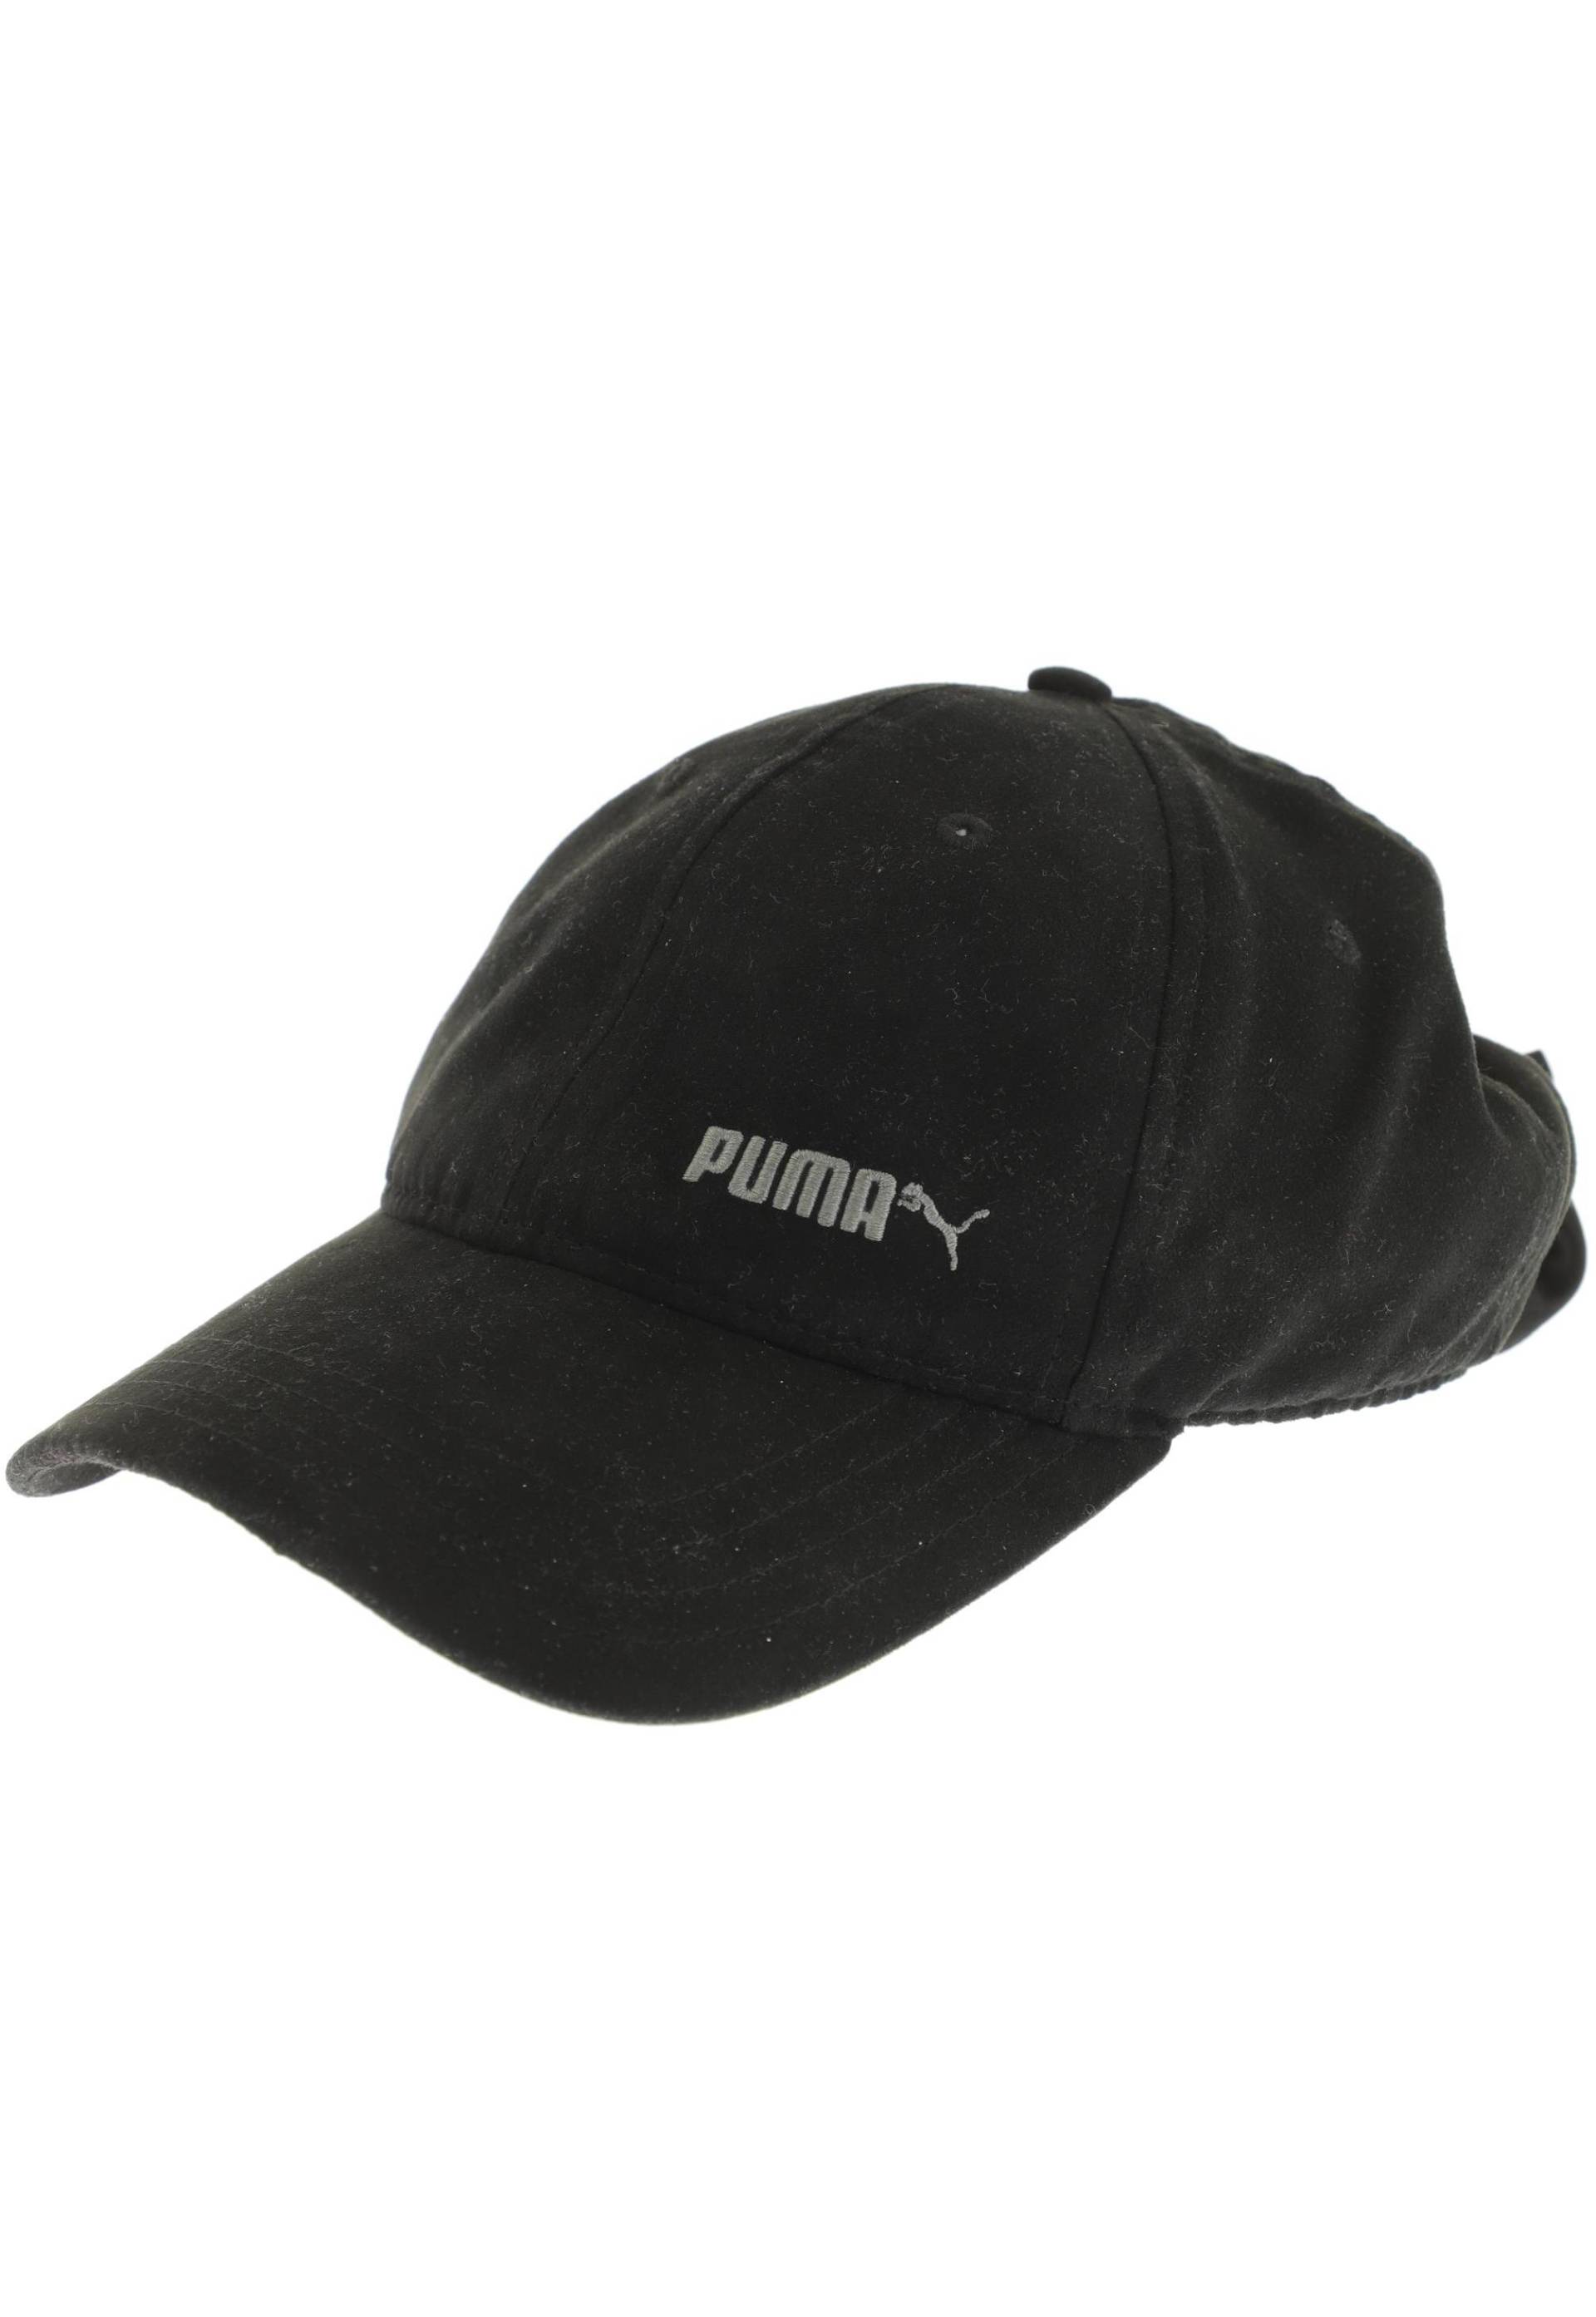 PUMA Damen Hut/Mütze, schwarz von Puma